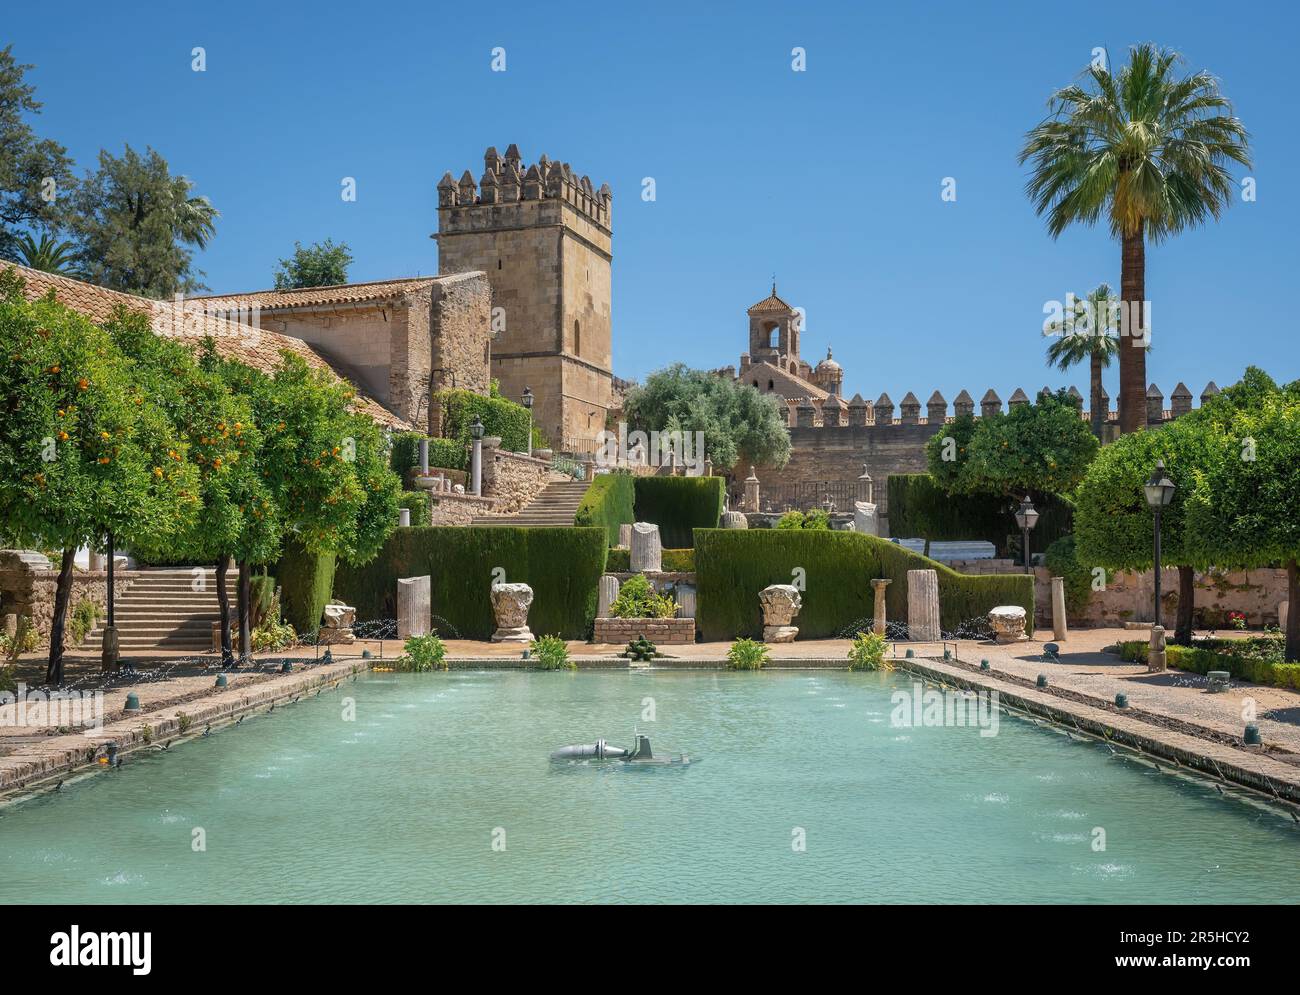 Gardens of Alcazar de los Reyes Cristianos - Cordoba, Andalusia, Spain Stock Photo